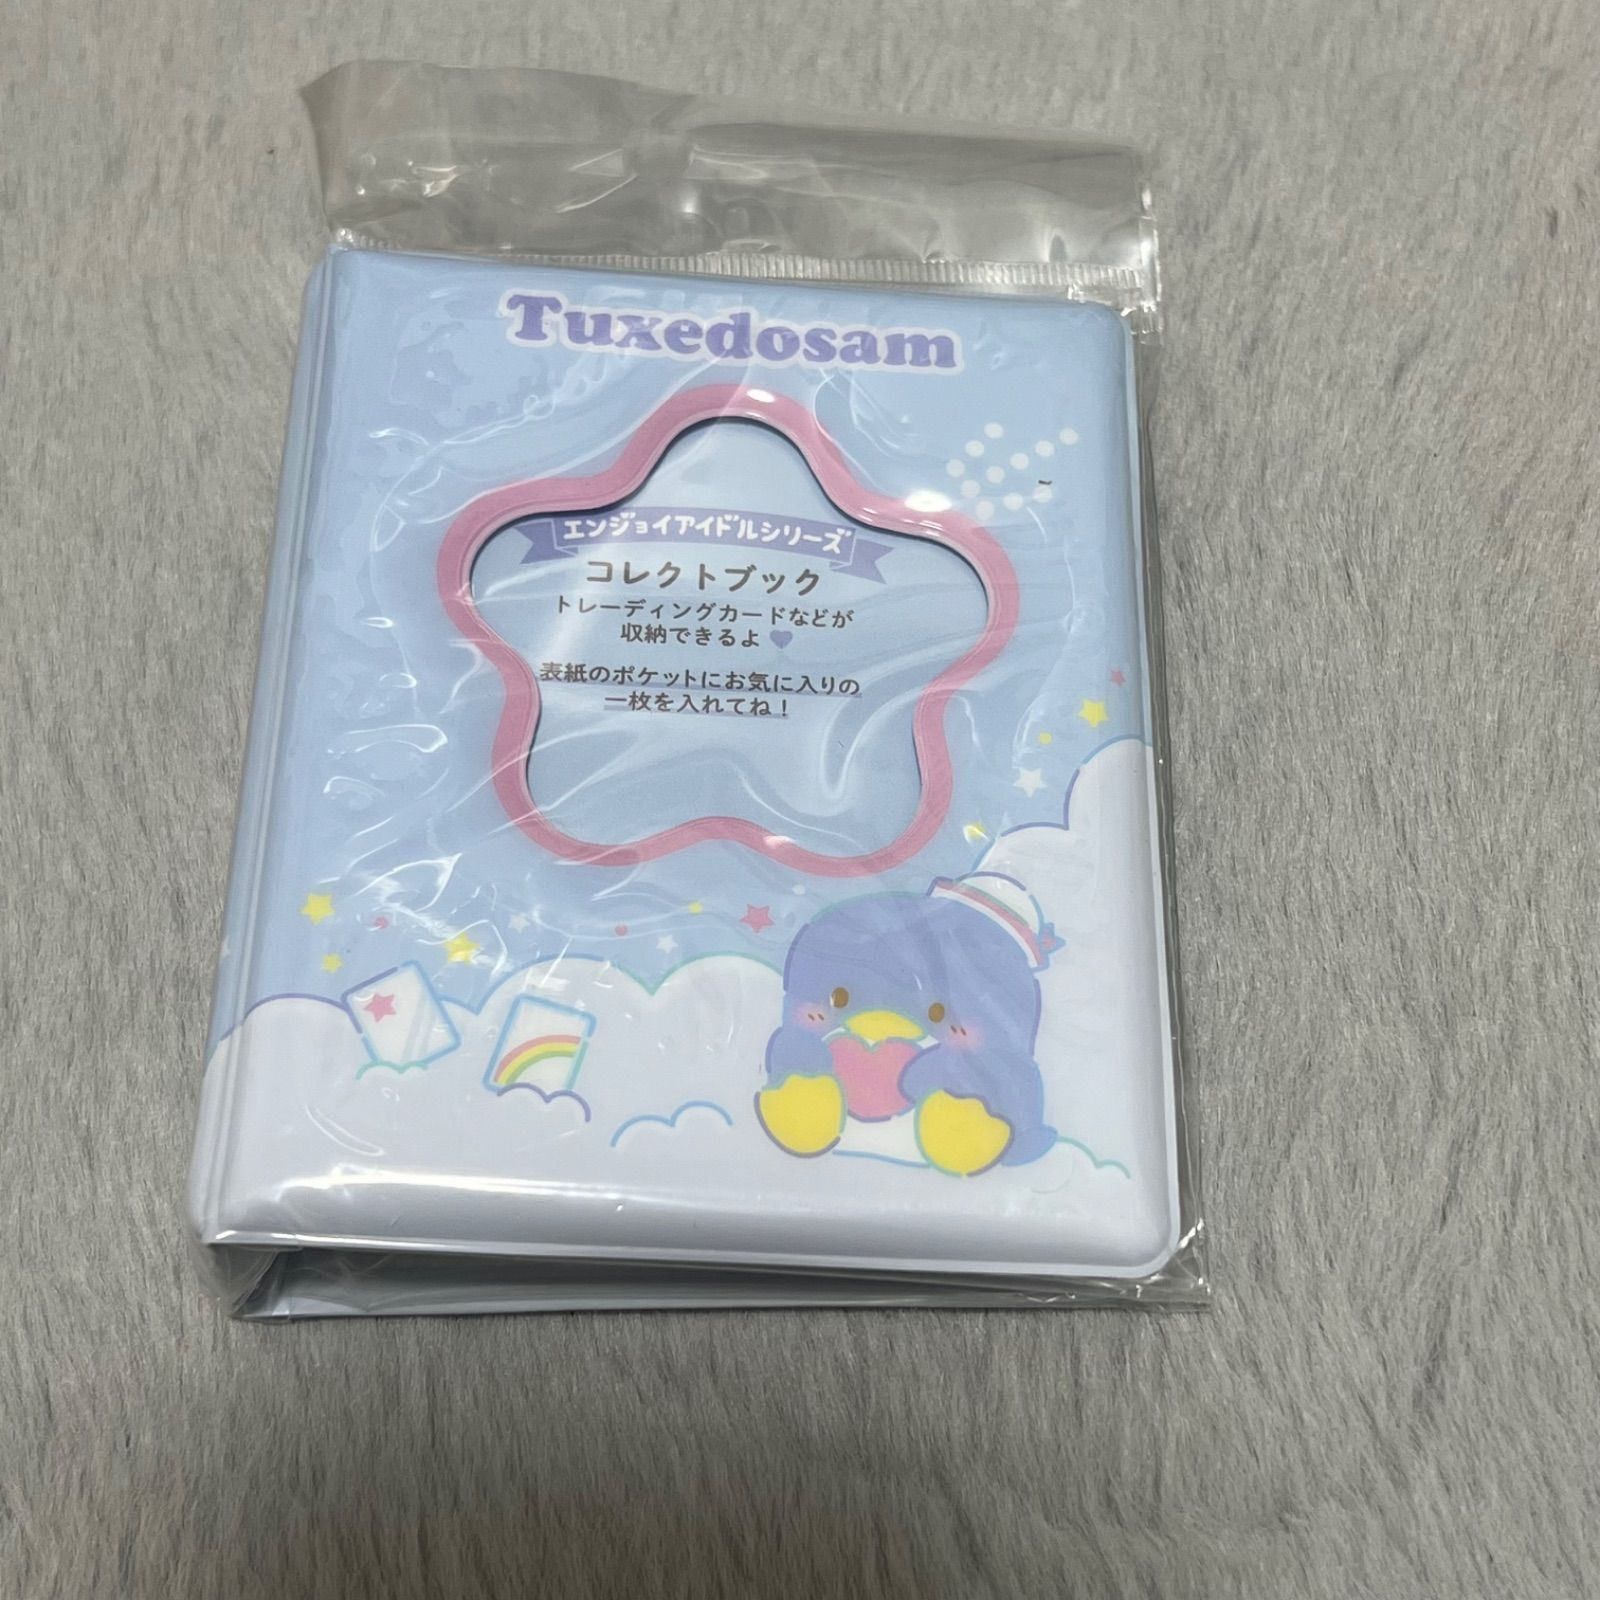 タキシードサム コレクトブック カードケース 40ポケット エンジョイアイドル サンリオ sanrio キャラクター